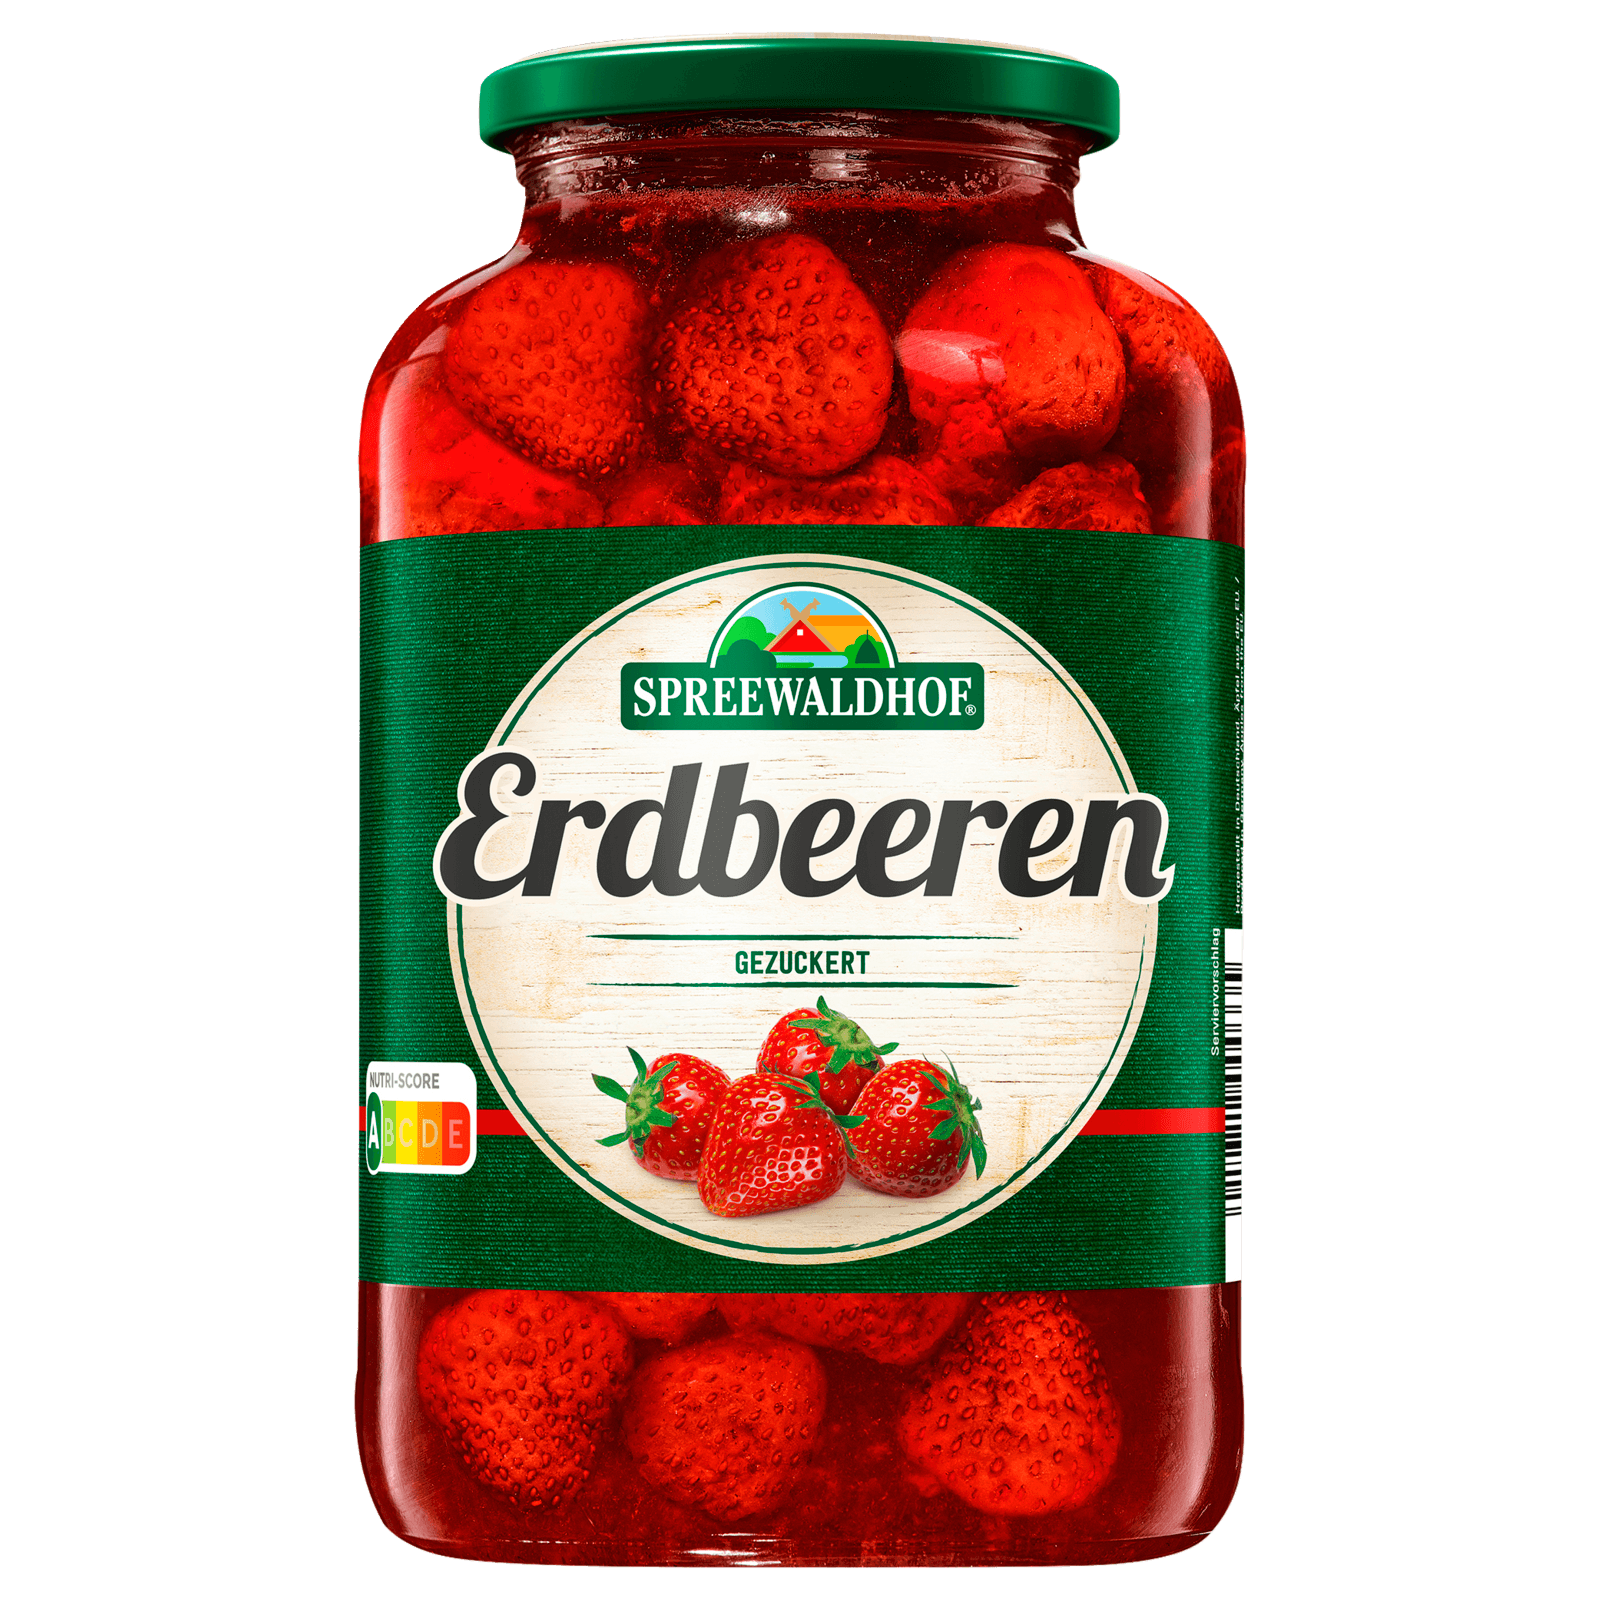 Spreewaldhof Erdbeeren gezuckert 720ml bei REWE online bestellen!